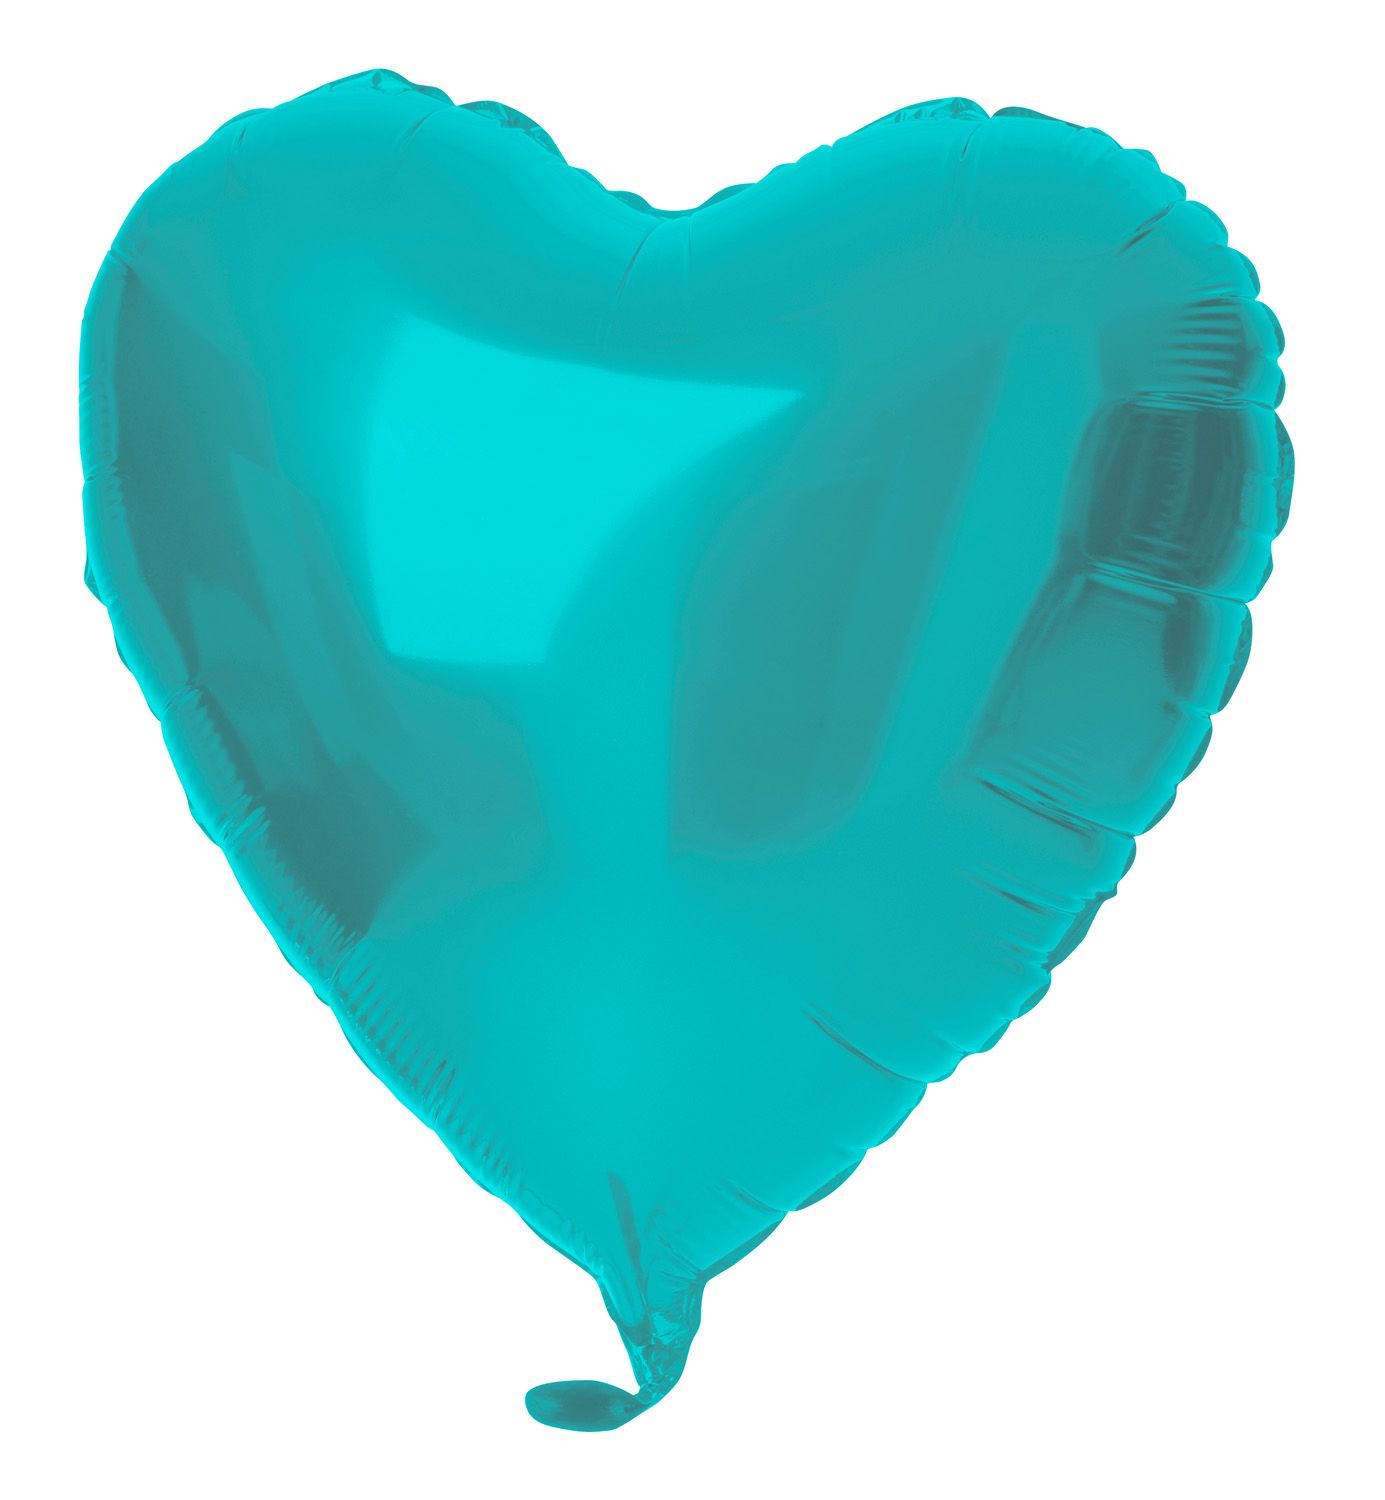 Hartvorm folieballon 45cm aqua blauw